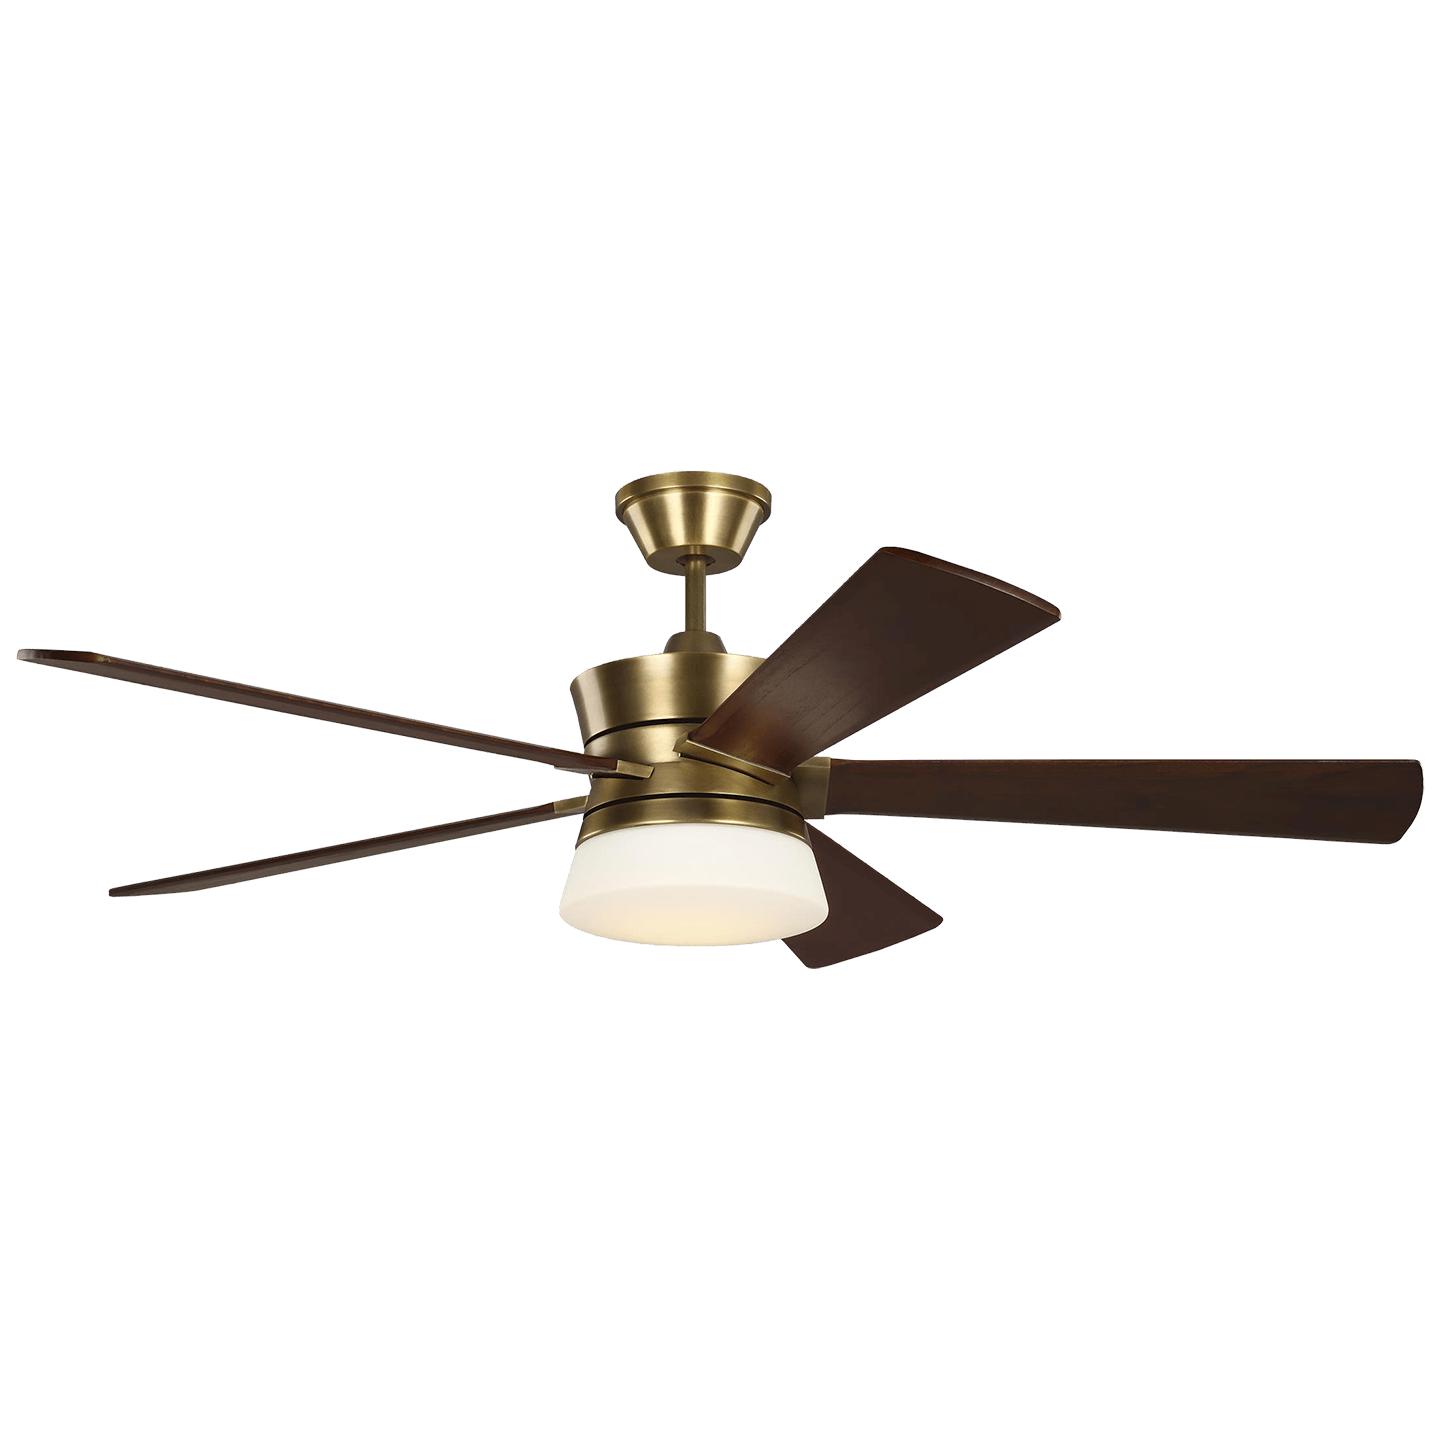 Купить Потолочный вентилятор Atlantic 56" LED Ceiling Fan в интернет-магазине roooms.ru